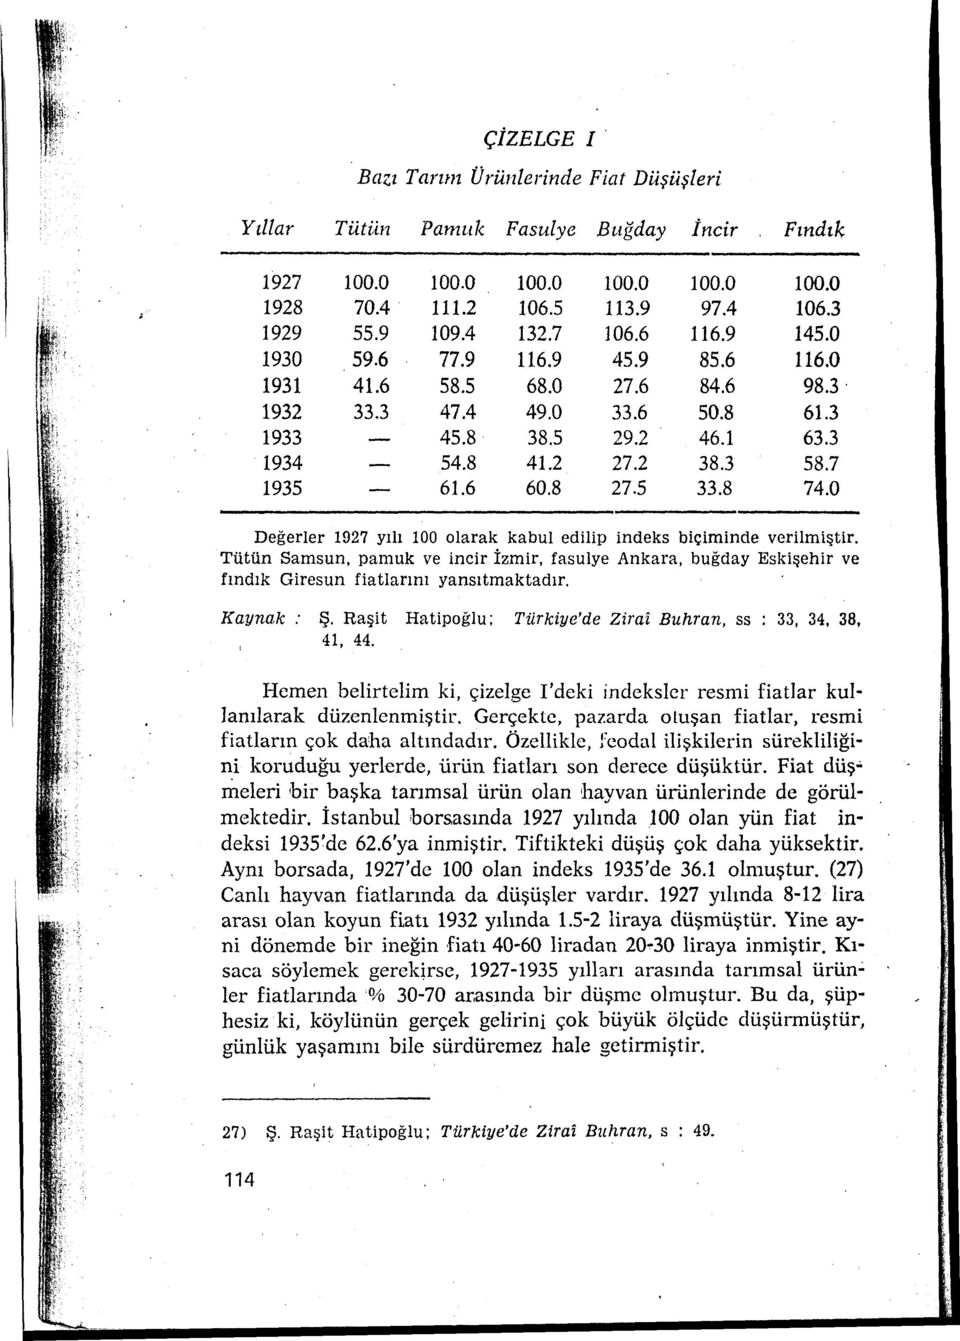 7 1935 61.6 60.8 27.5 33.8 74.0 Değerler 1927 yılı 100 olarak kabul edilip indeks biçiminde verilmiştir.